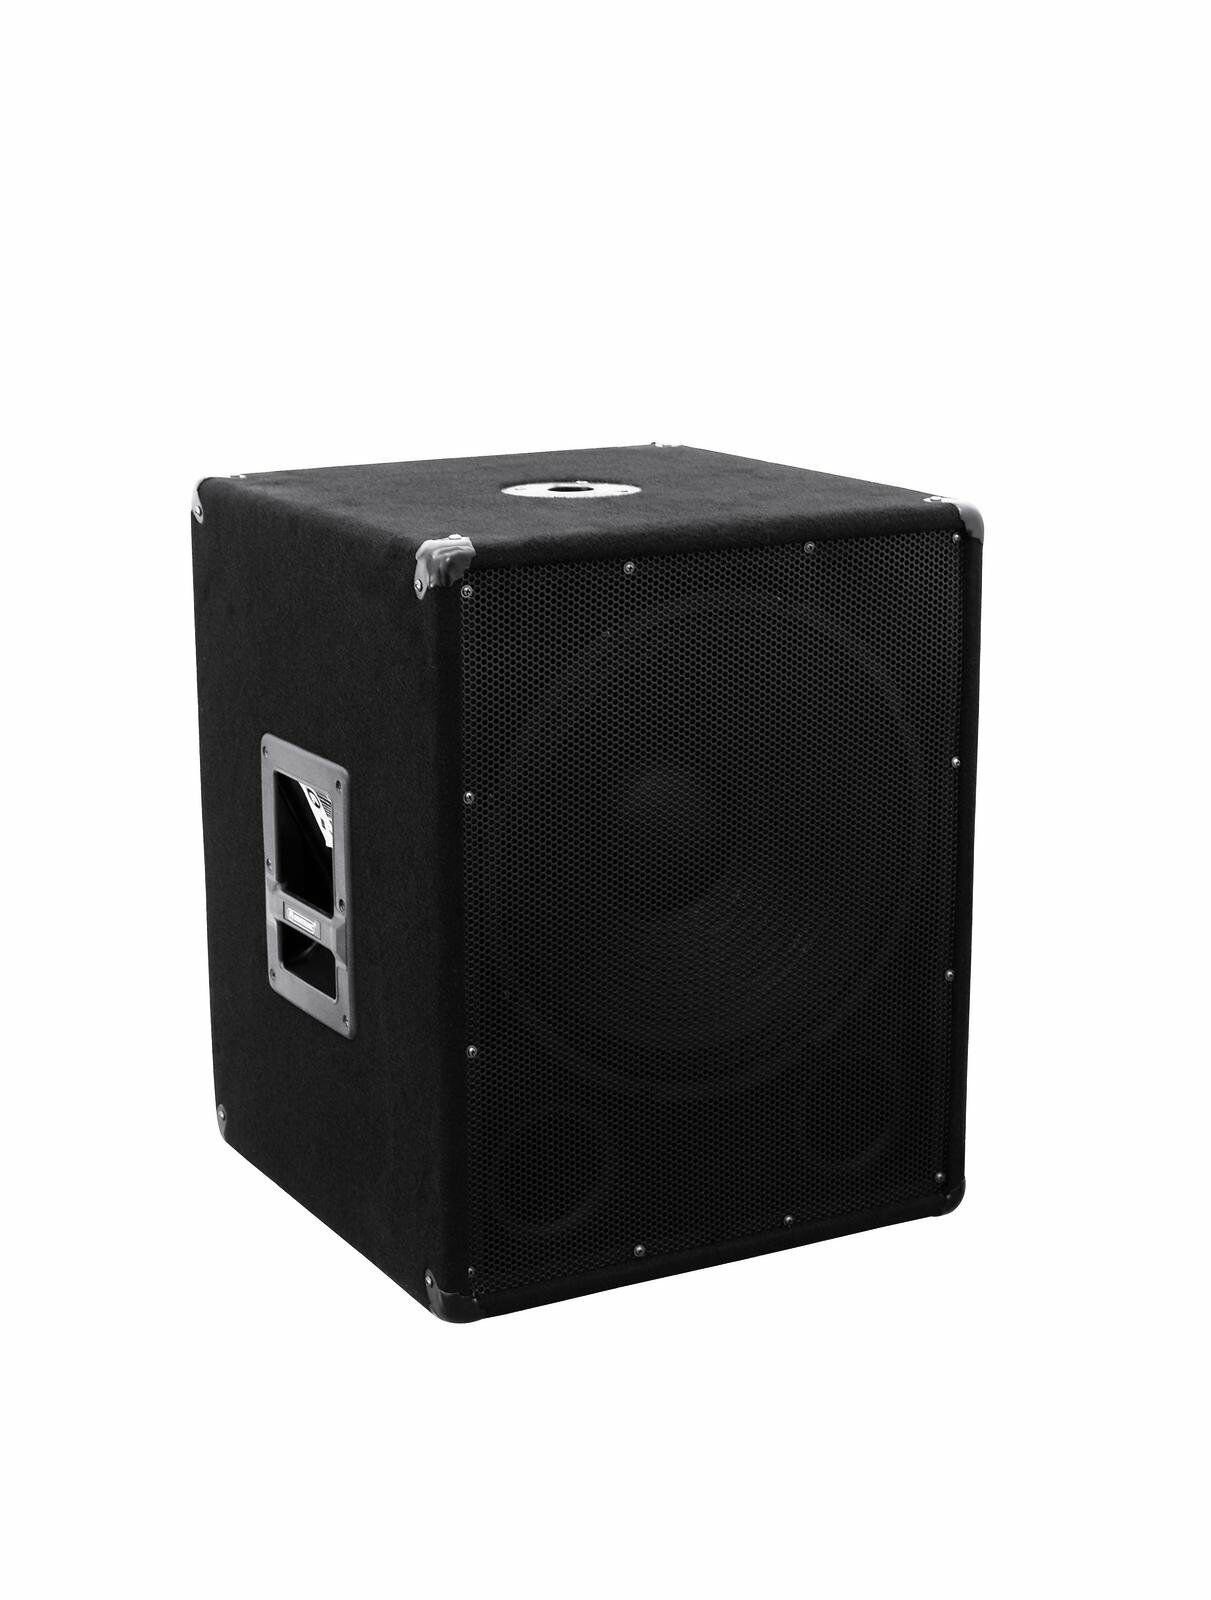 Stativ Musik Kabel W) Powermixer Lichtset DSX (900 Anlage 1800 Watt Party-Lautsprecher Boxen